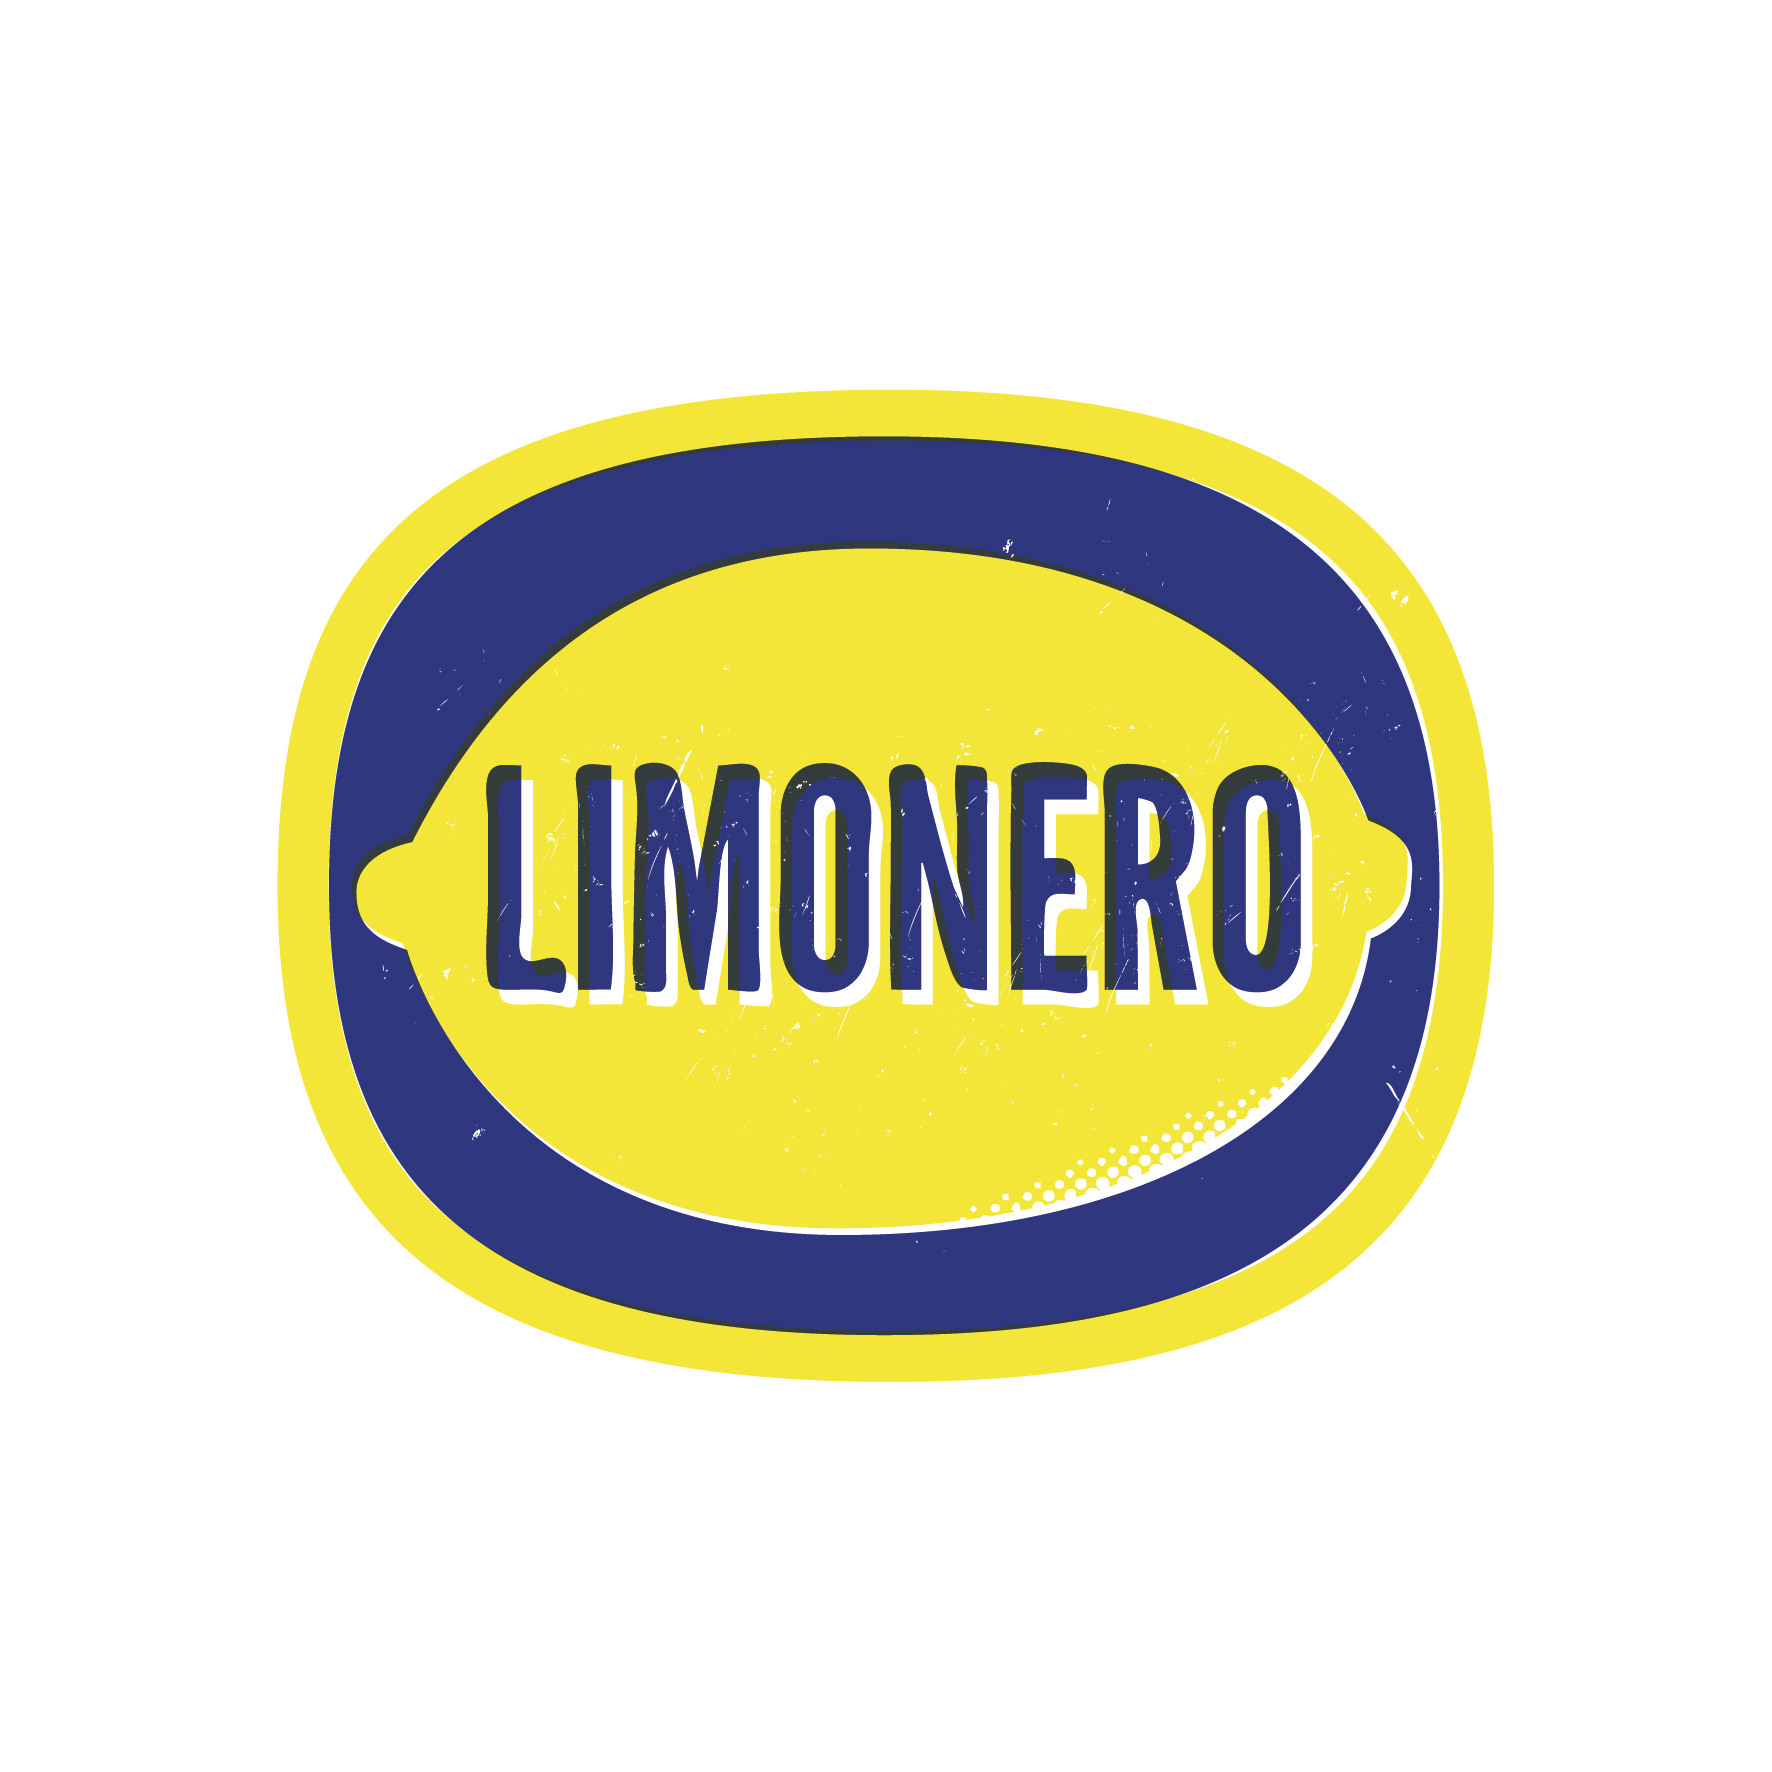 http://www.limonero.com.ar/